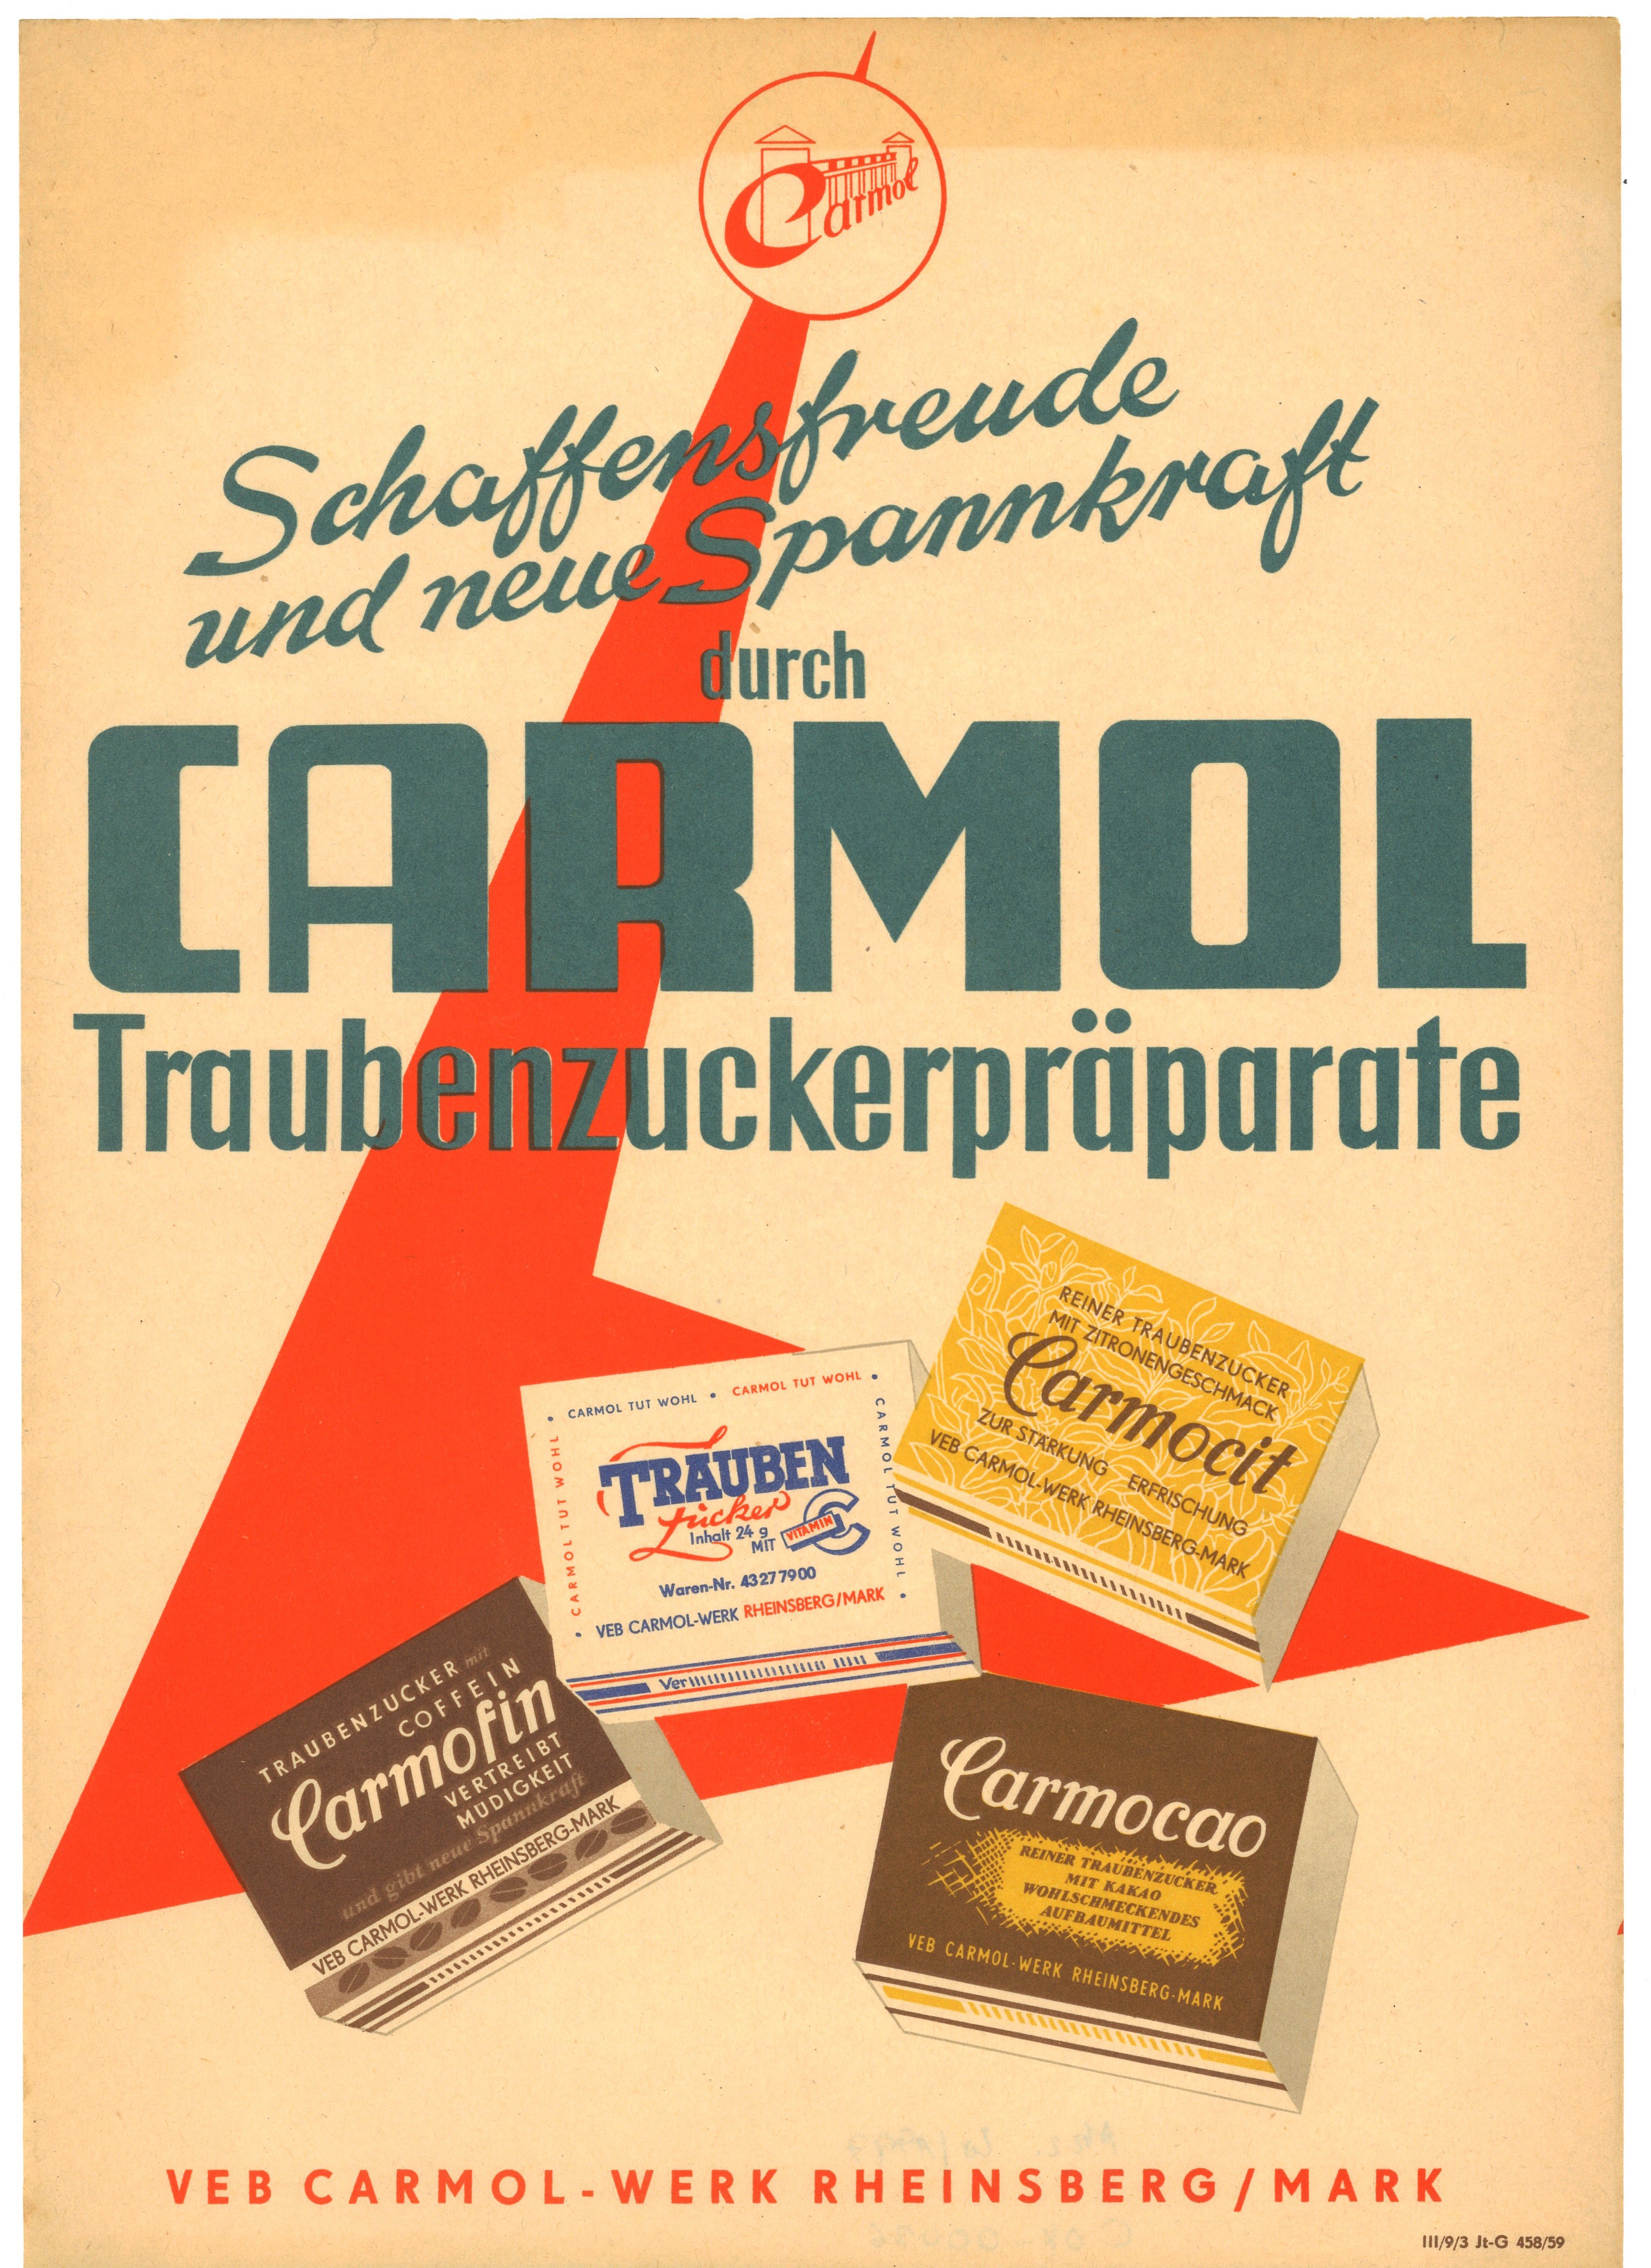 Werbeblatt des VEB Carmol-Werk Rheinsberg für Traubenzuckerpräparate (1959) (Landesgeschichtliche Vereinigung für die Mark Brandenburg e.V., Archiv CC BY)